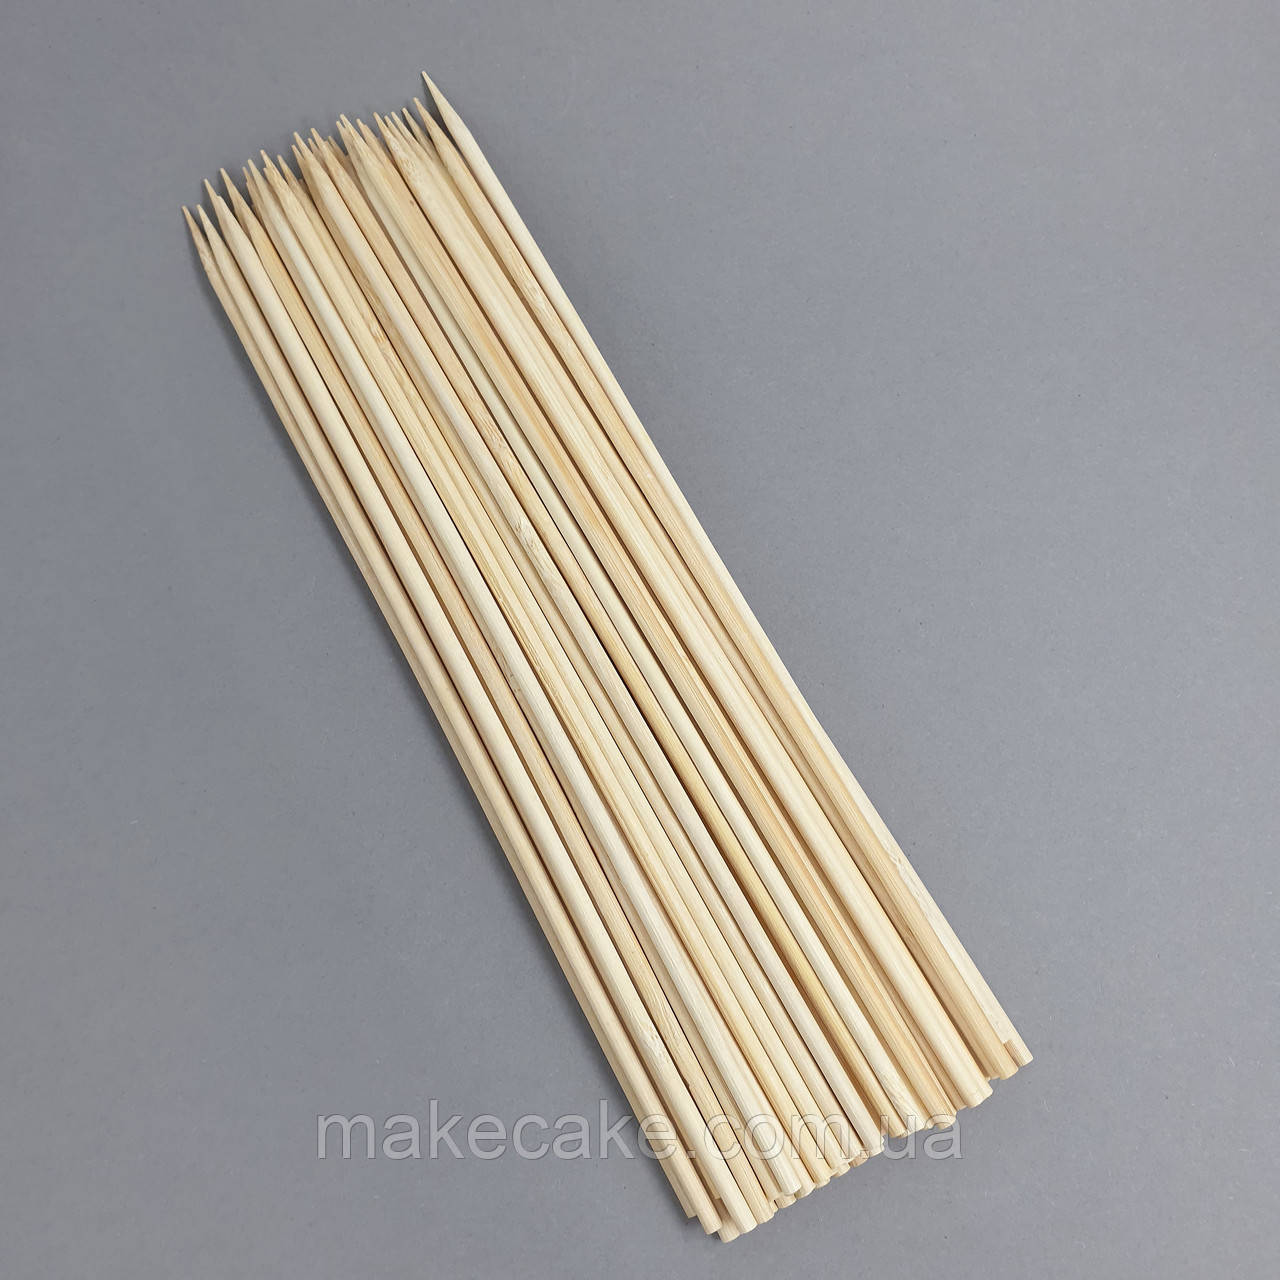 Дерев'яні шпажки (бамбукові палички) 25 см — 100 шт